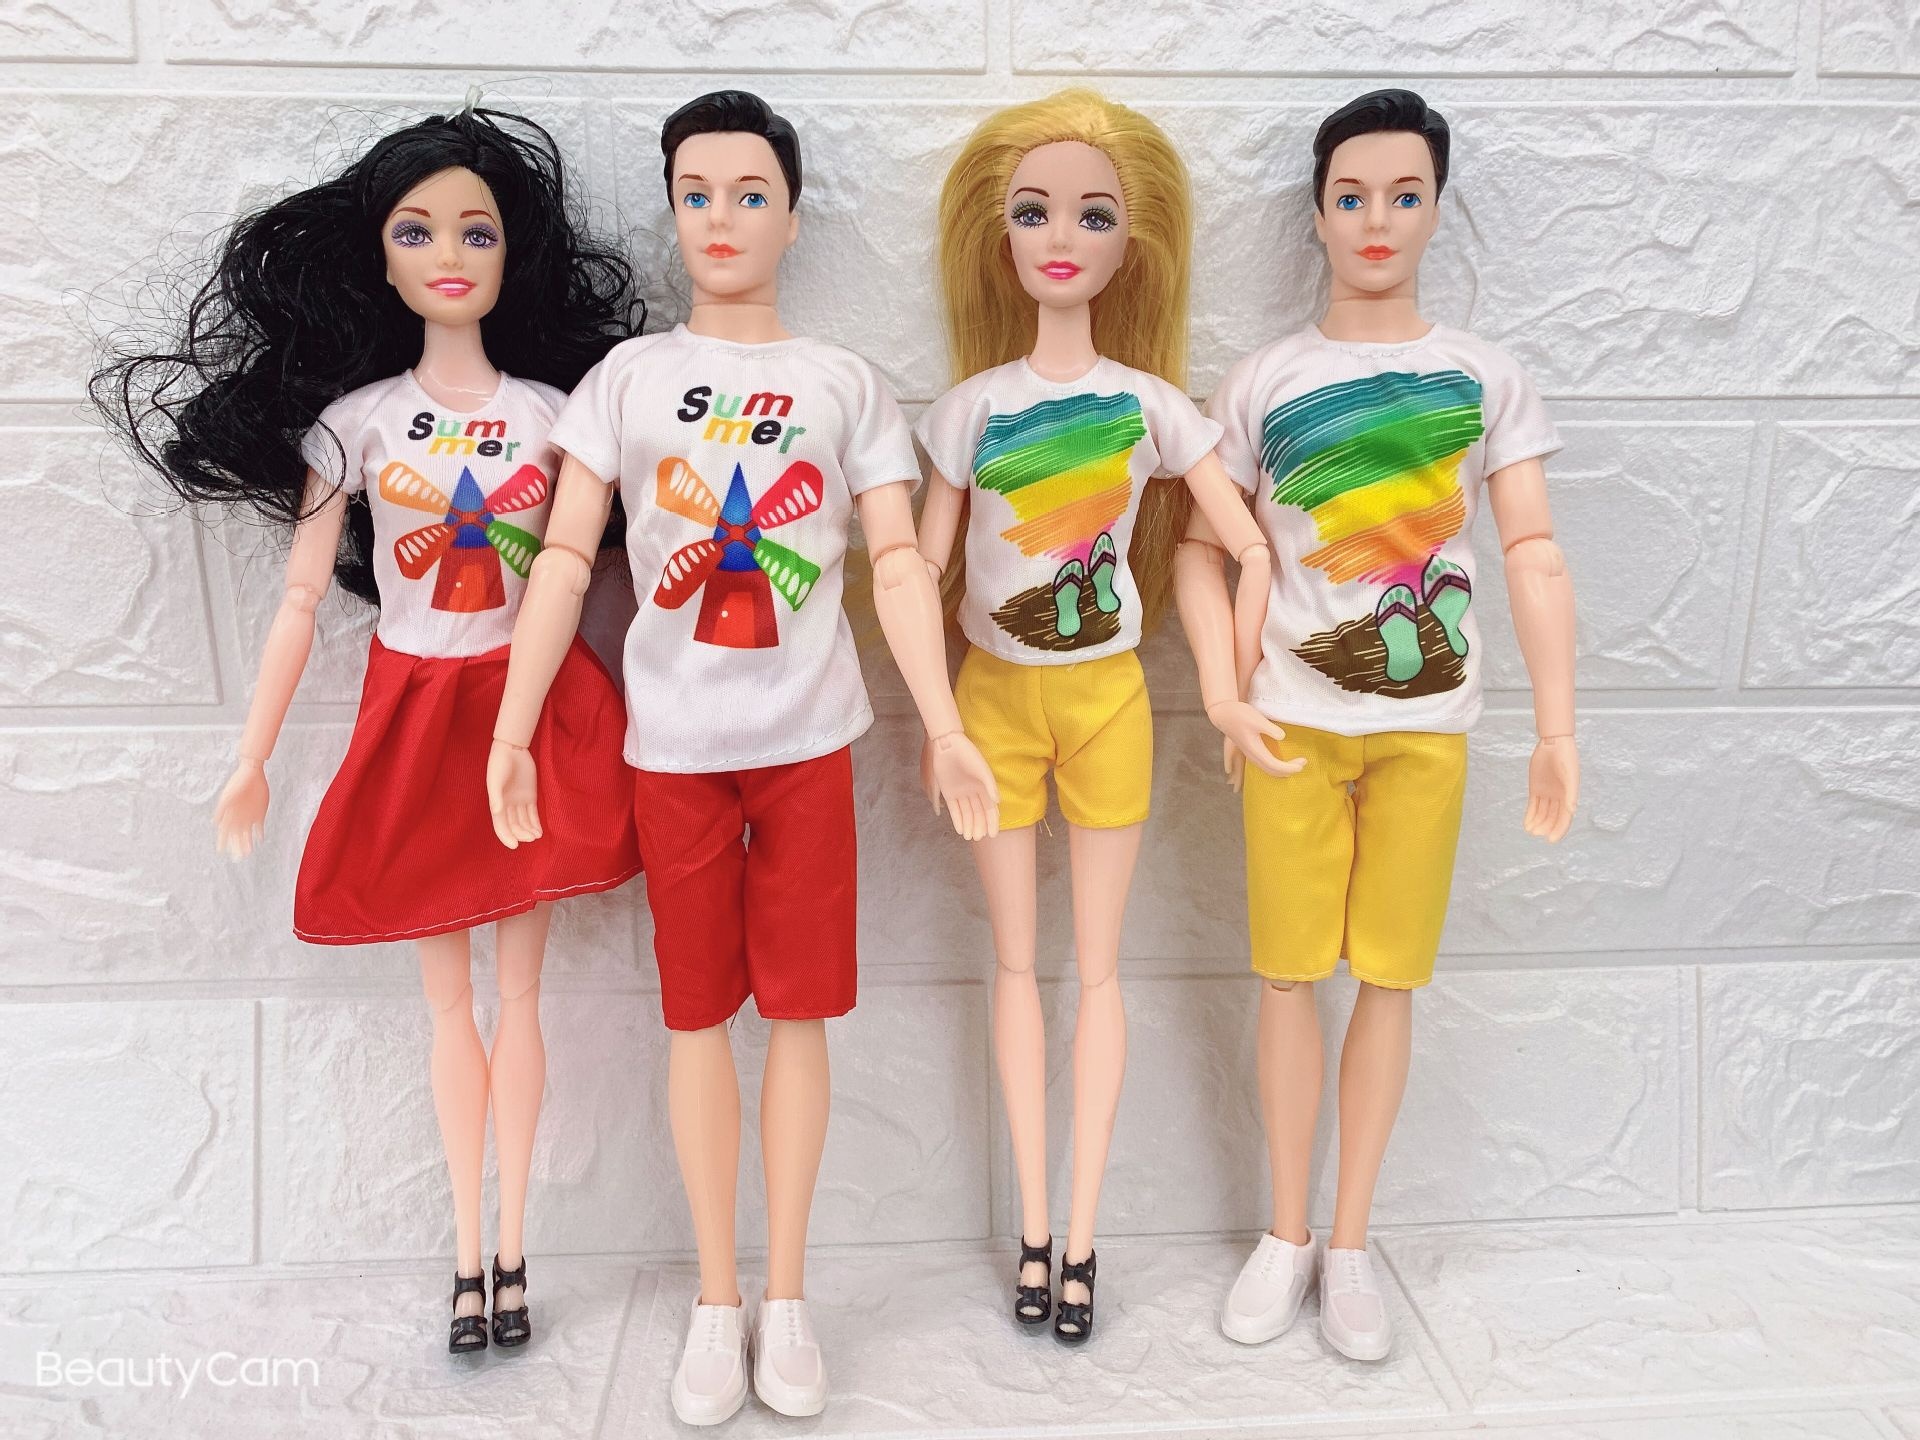 Ken Doll, Couple doll dress, Casual wear, Accessories, 1920x1440 HD Desktop